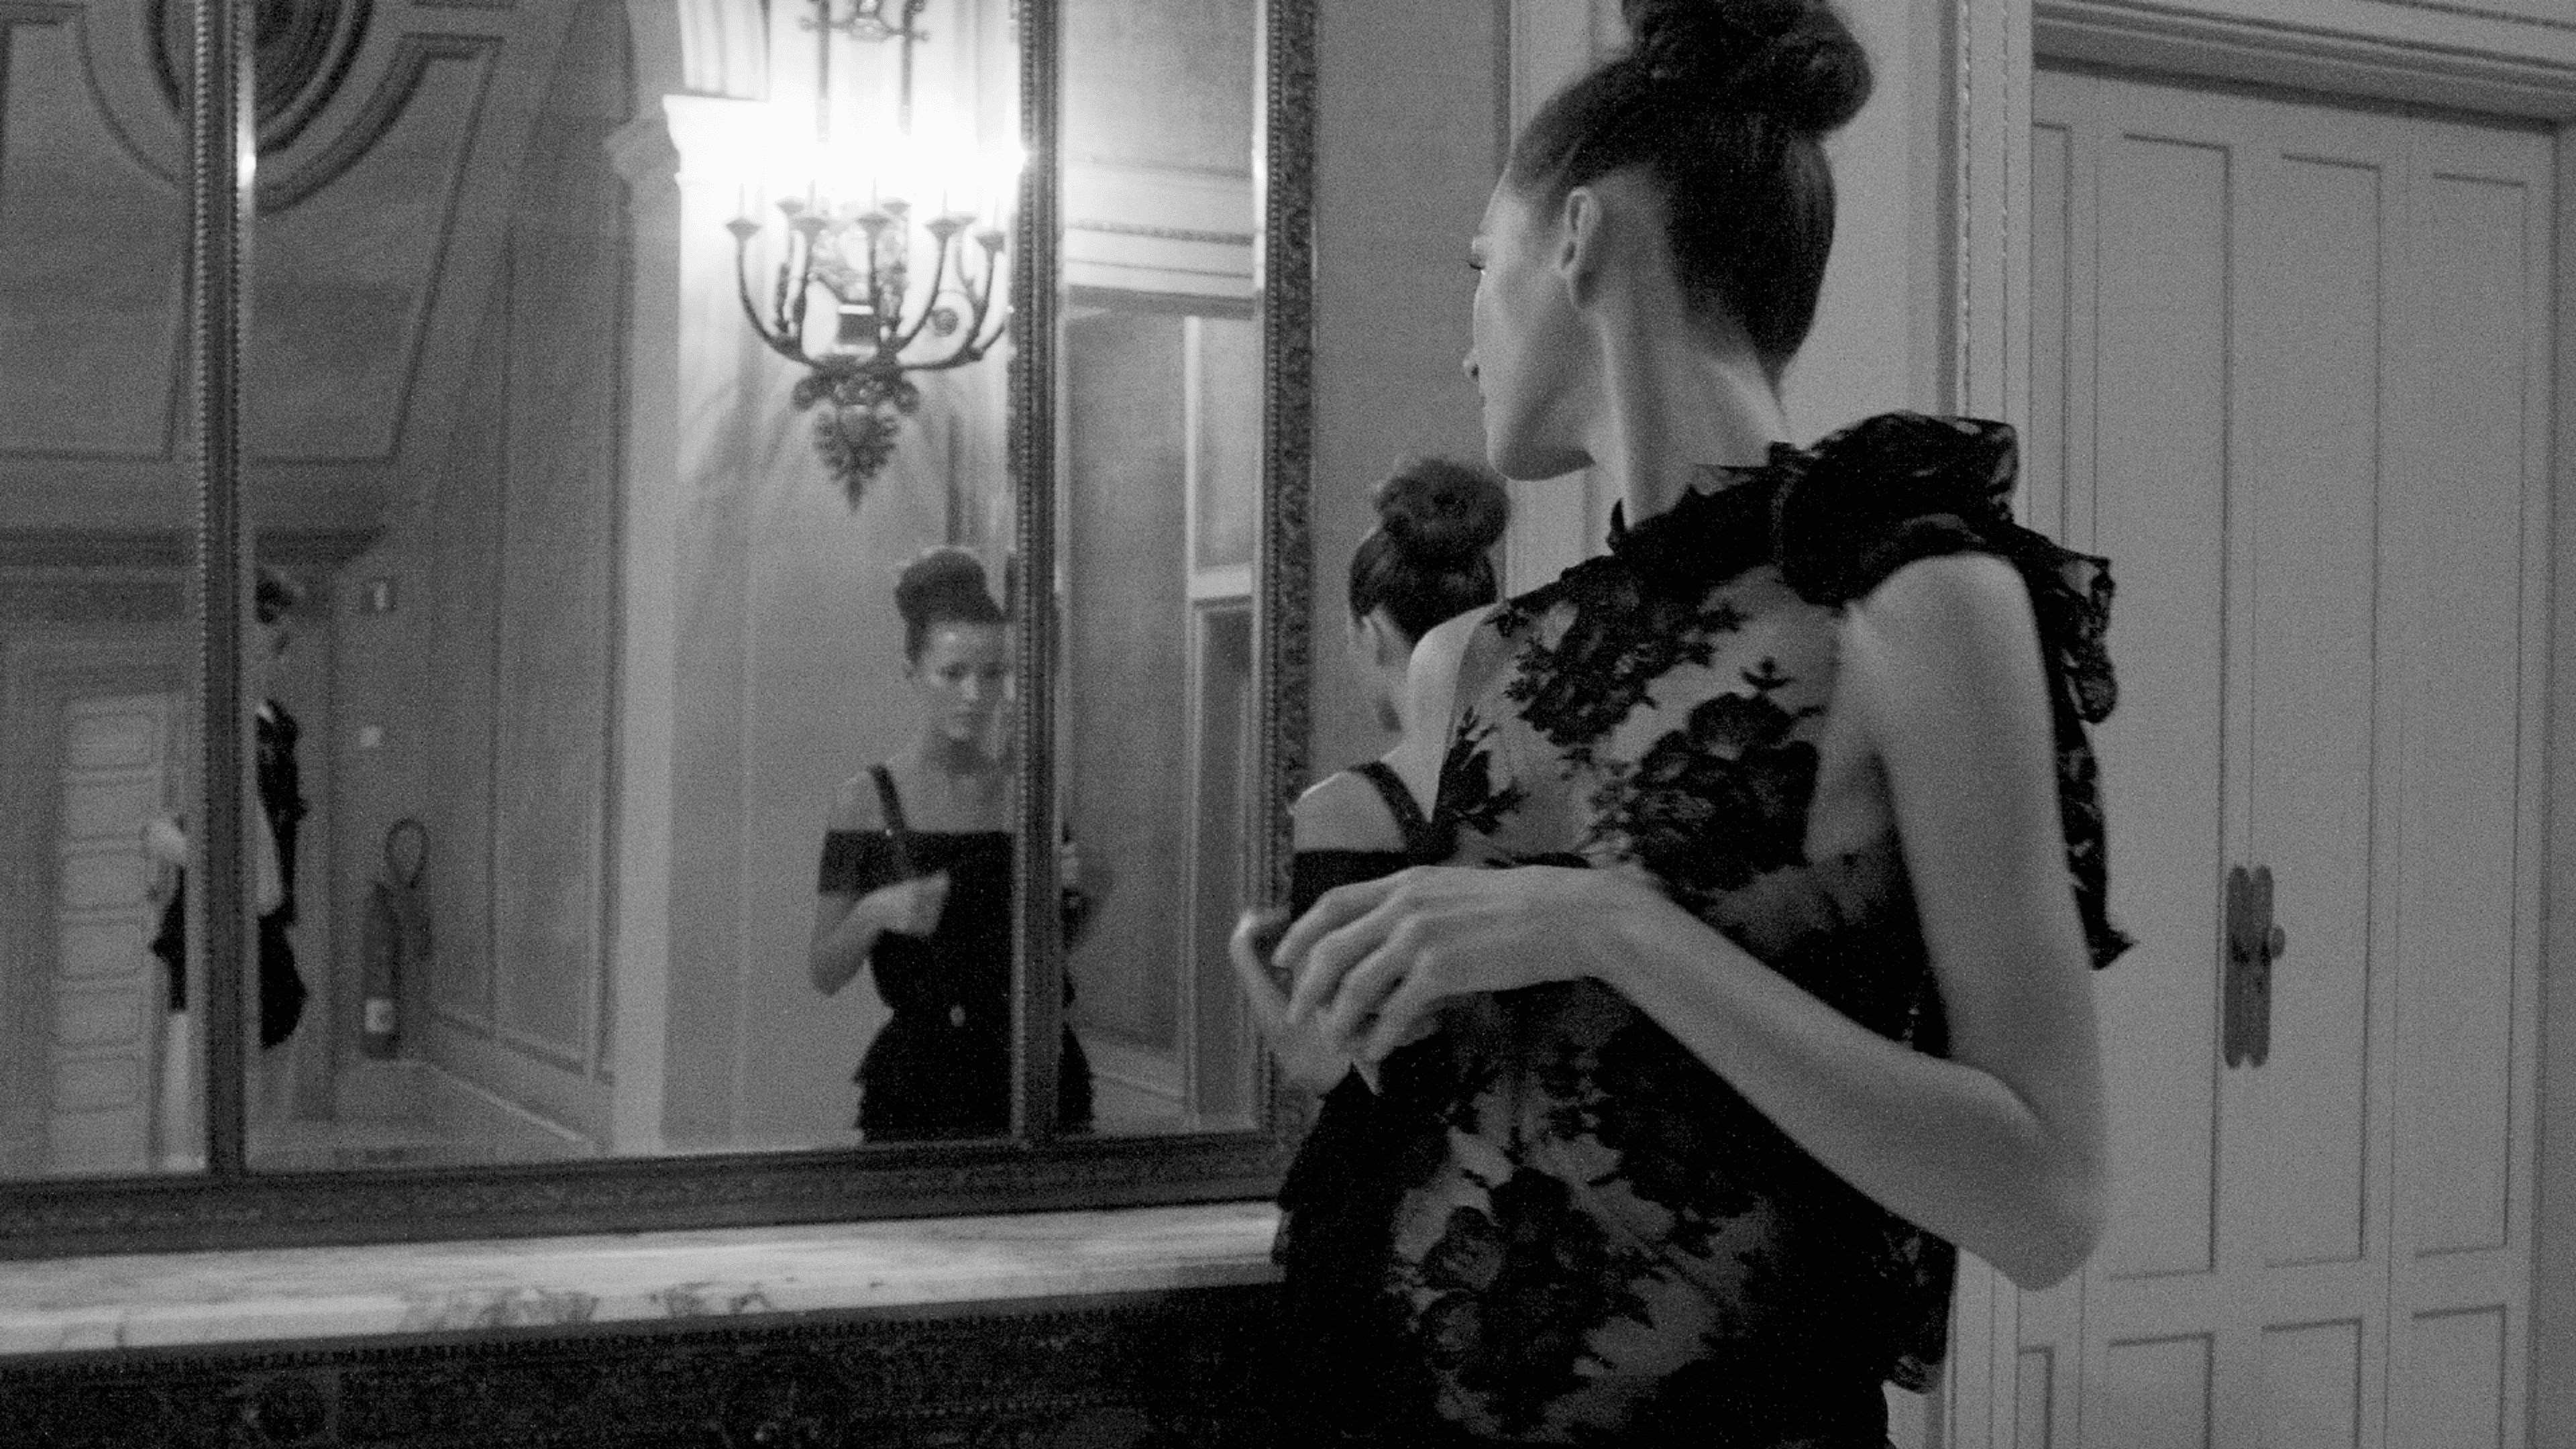 Una dona amb un vestit de nit negre sofisticat admira el seu reflex en un gran mirall, capturant un moment d'elegància clàssica.